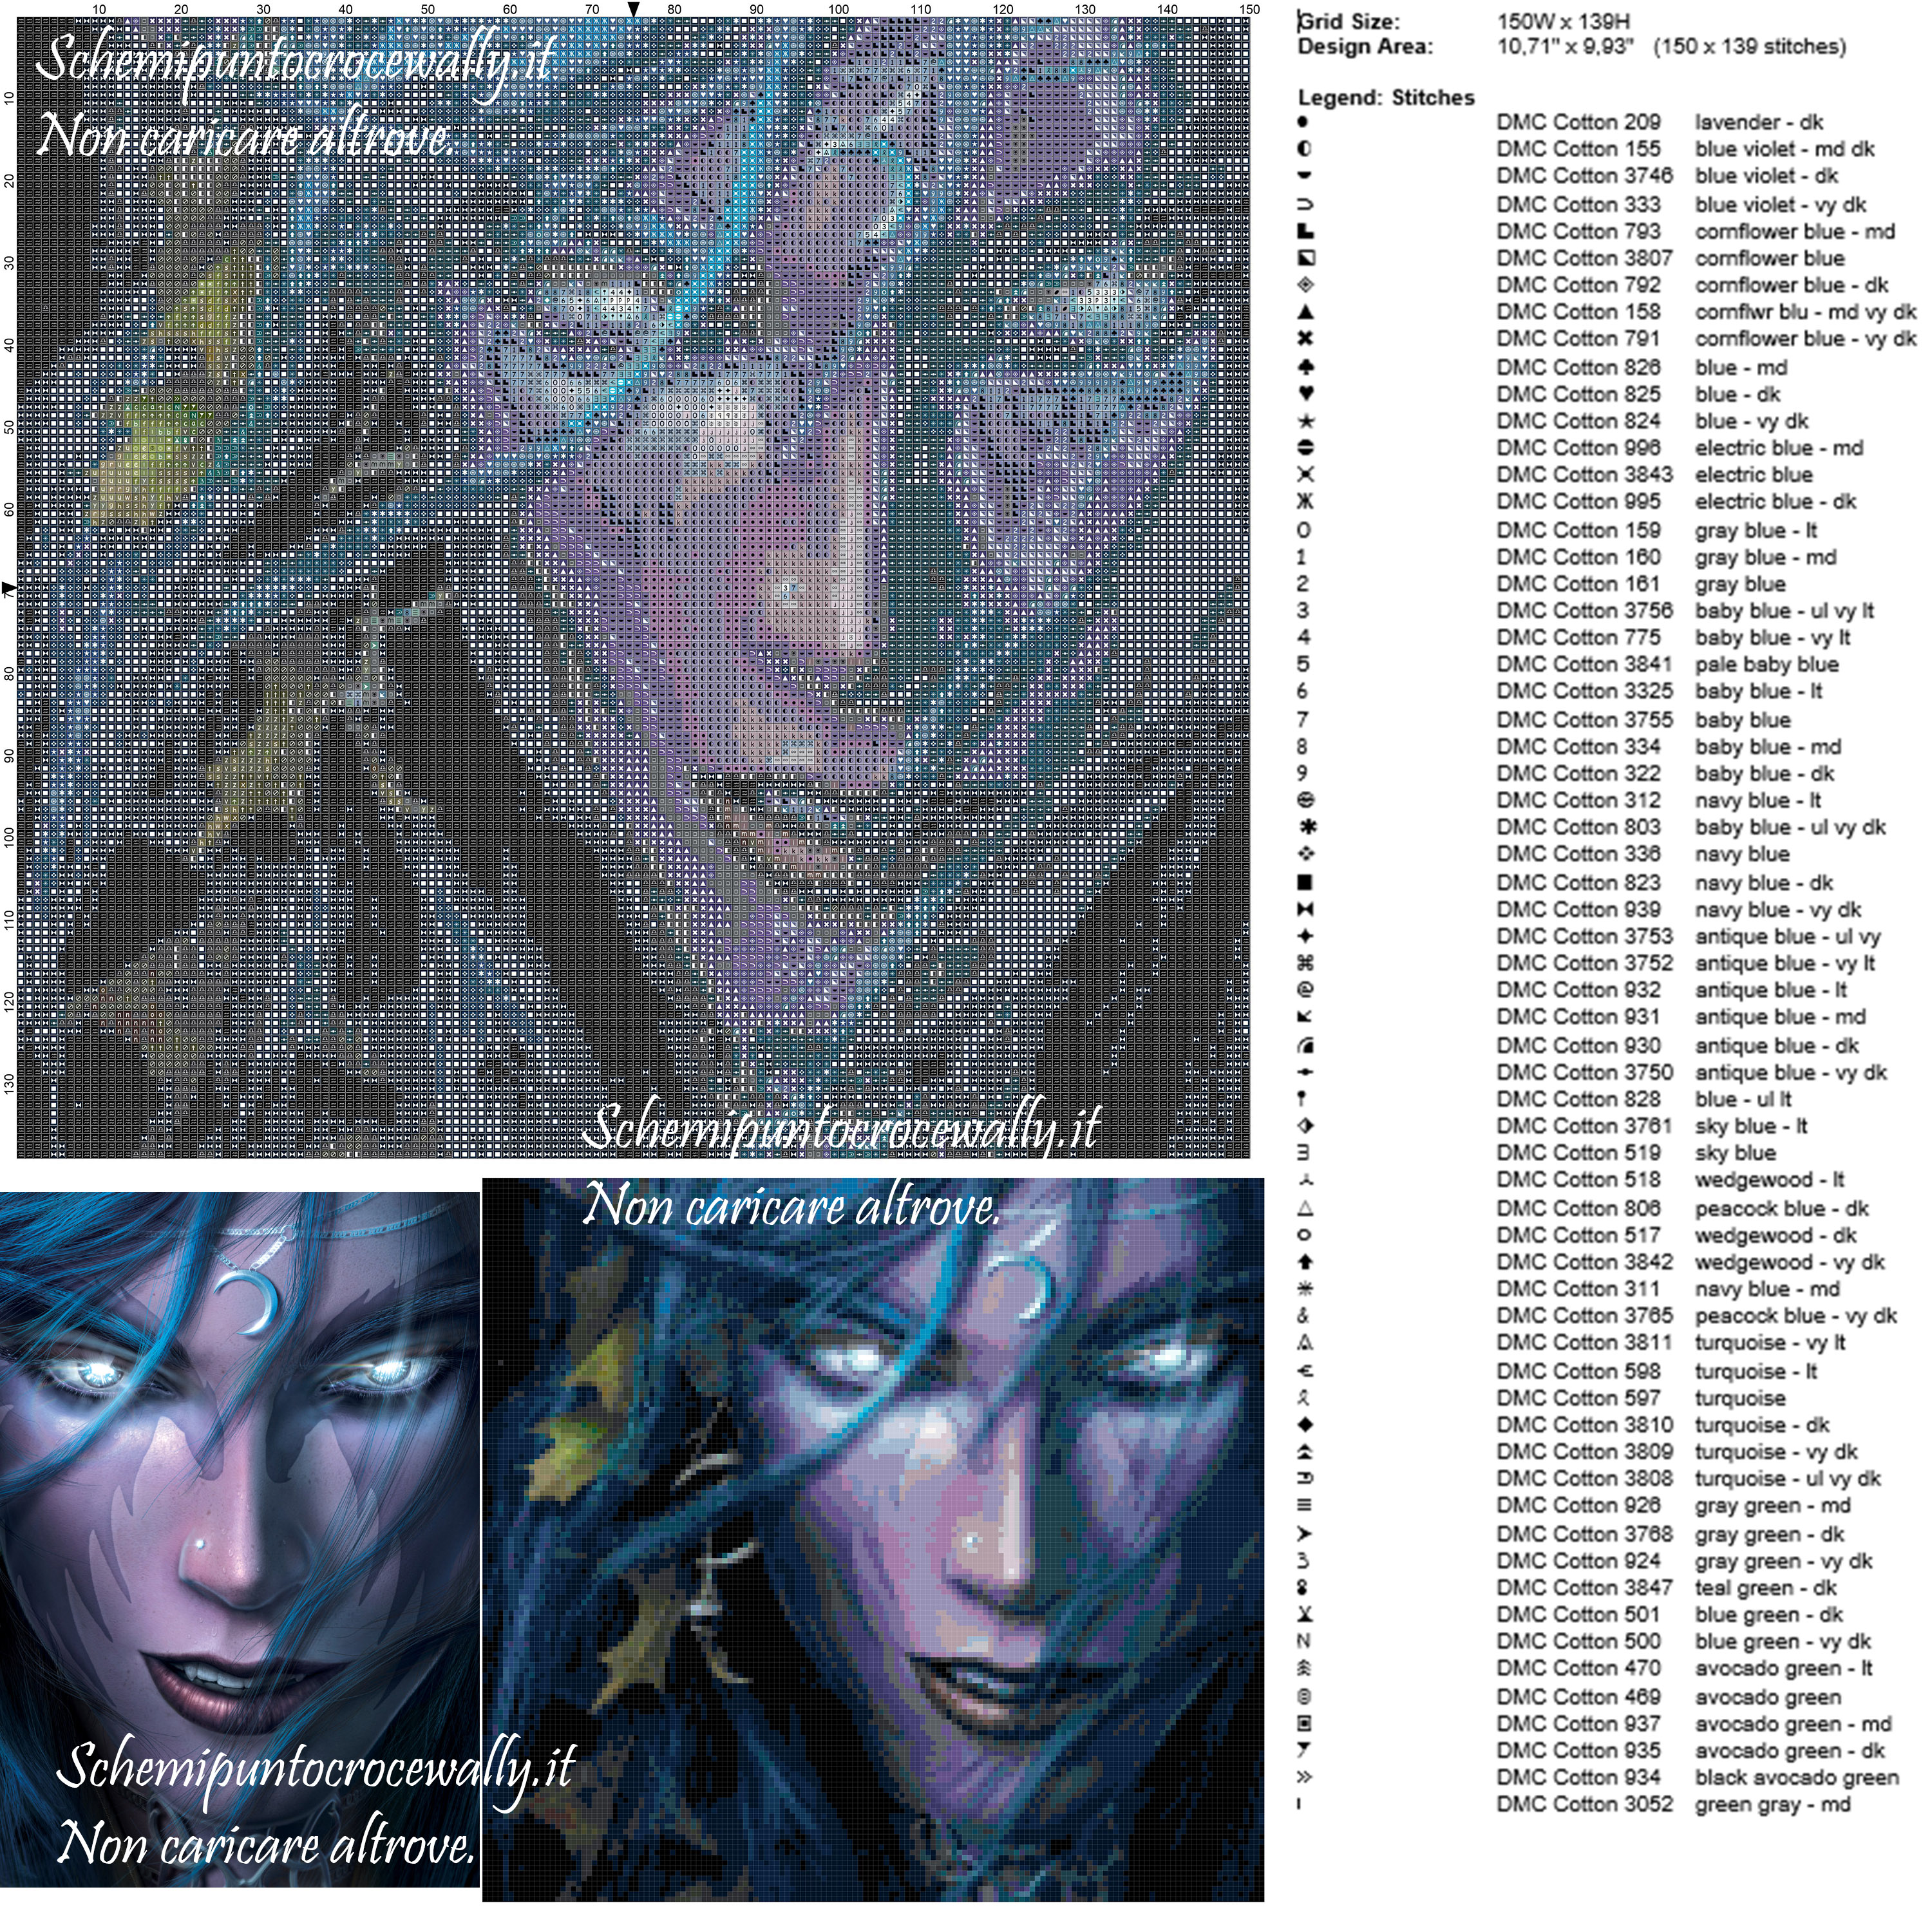 Elfo della notte World Of Warcraft schema punto croce 150x139 100 colori